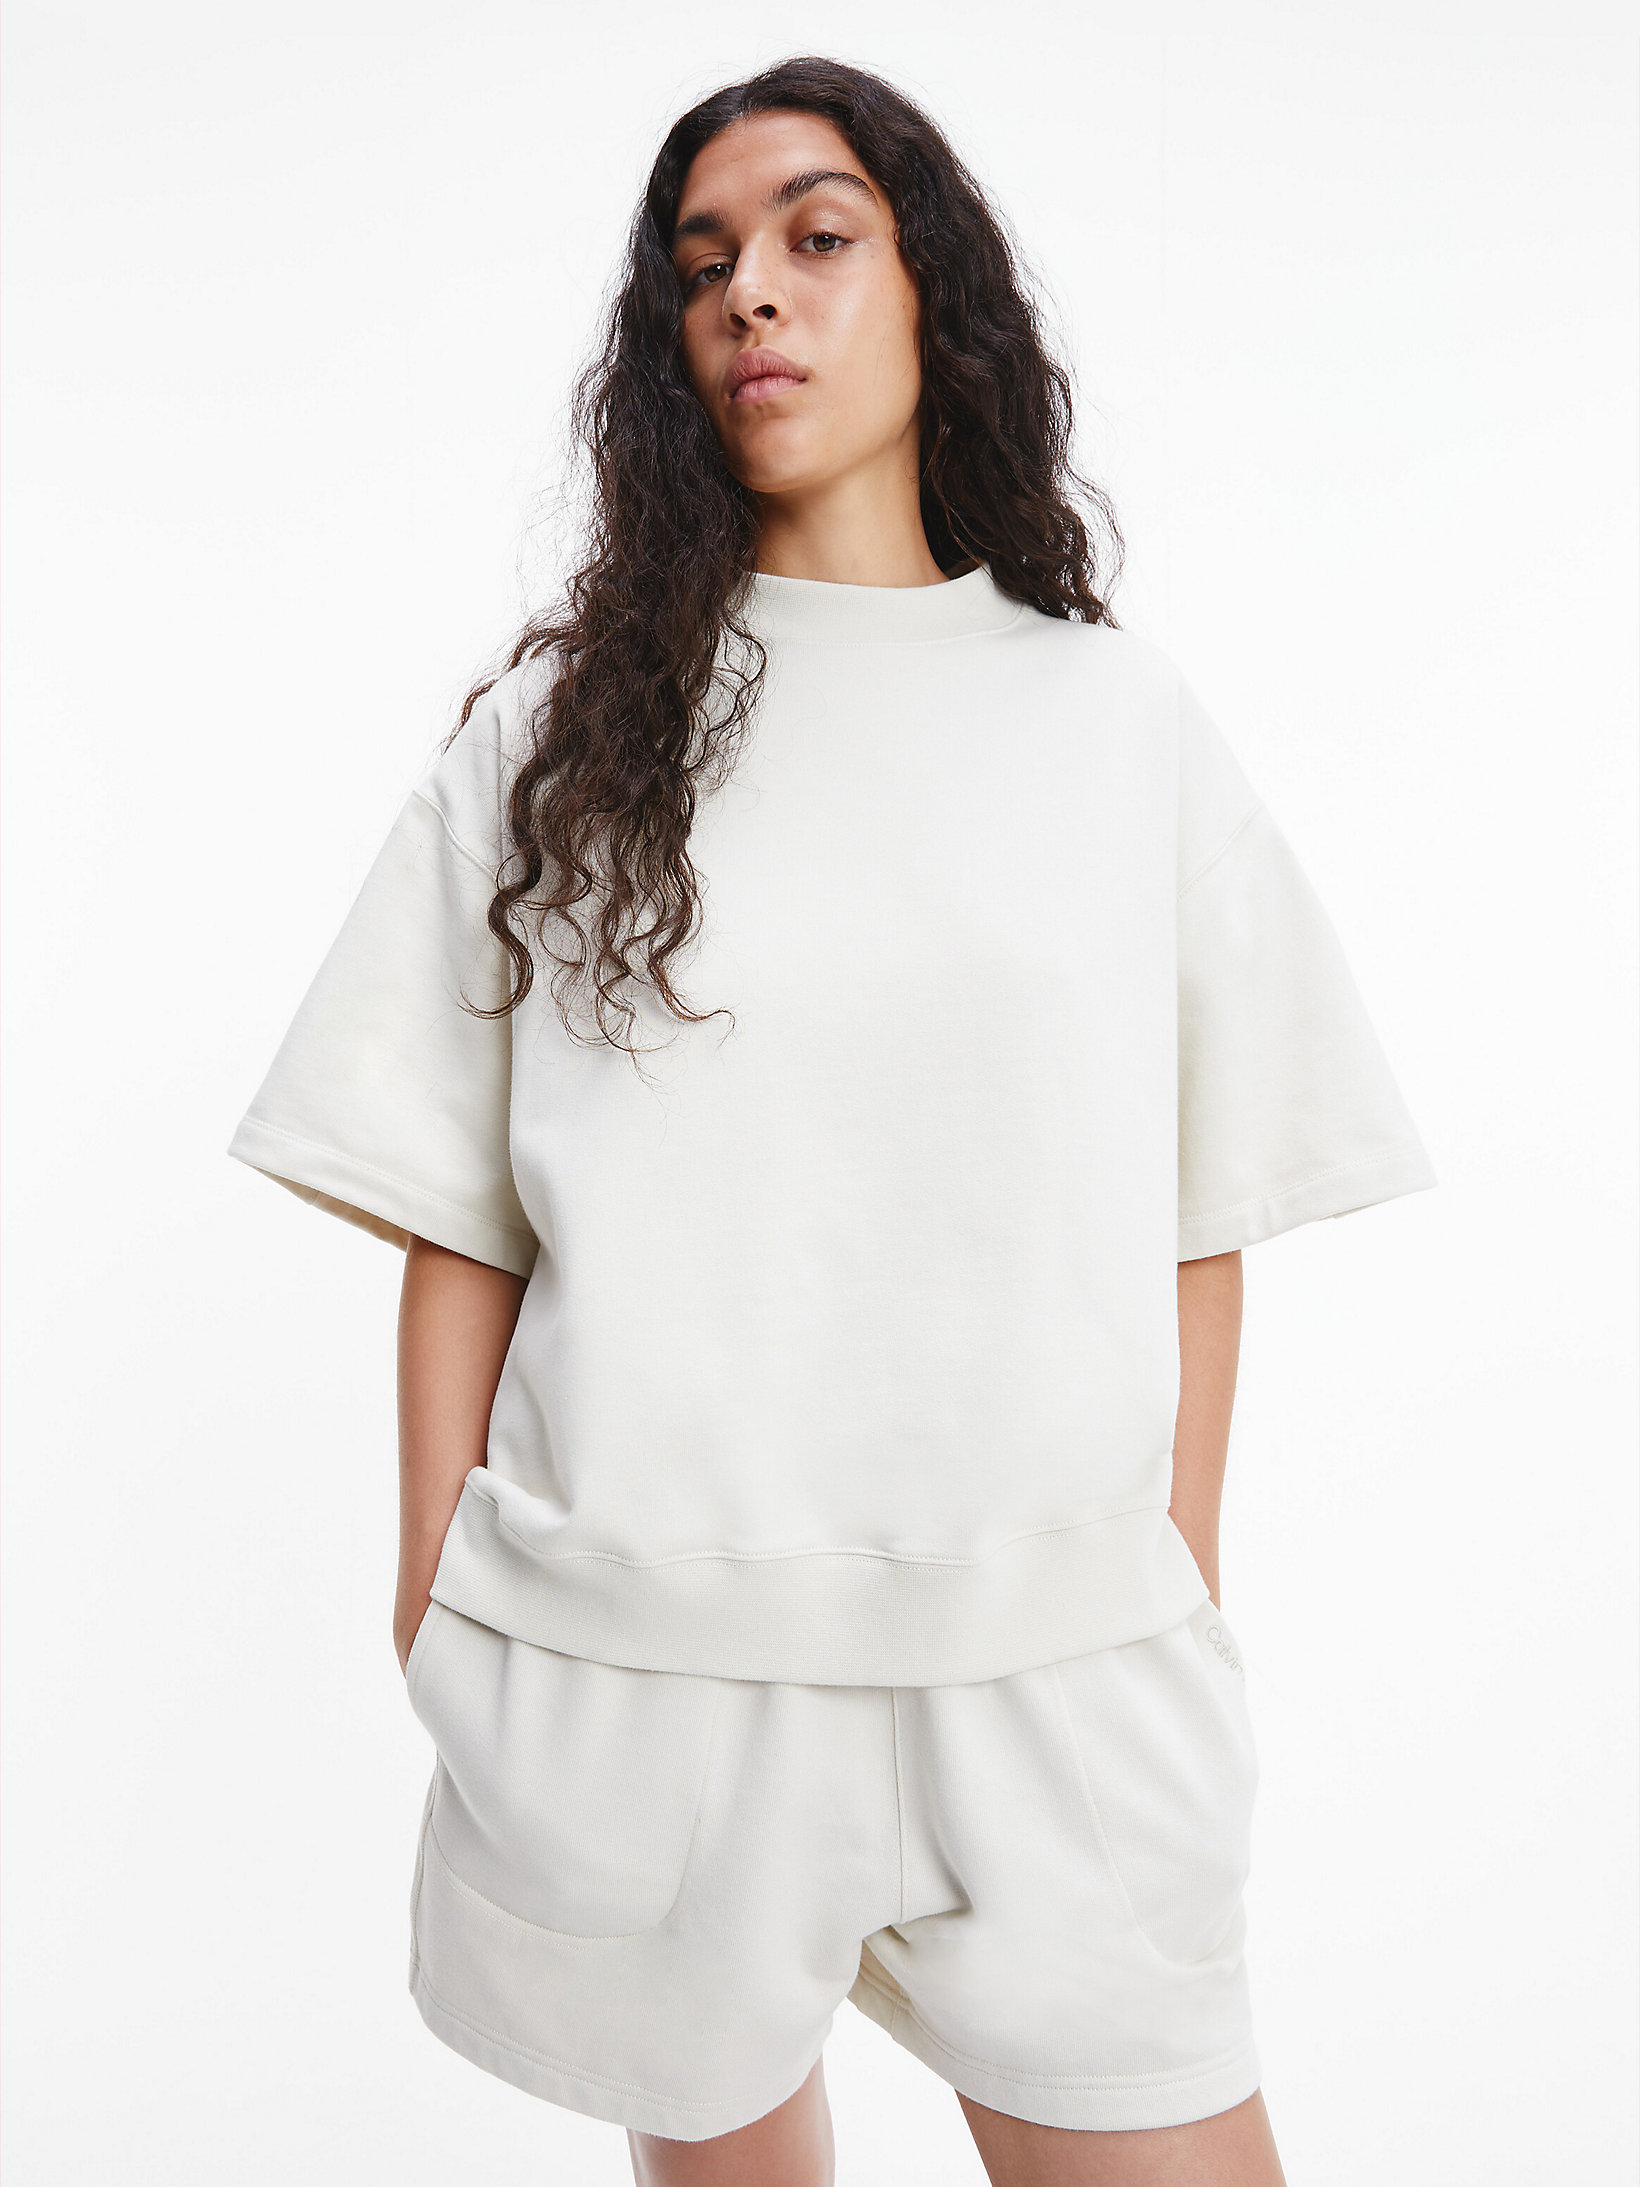 Bone White Unisex Short Sleeve Sweatshirt - CK Standards undefined unisex Calvin Klein